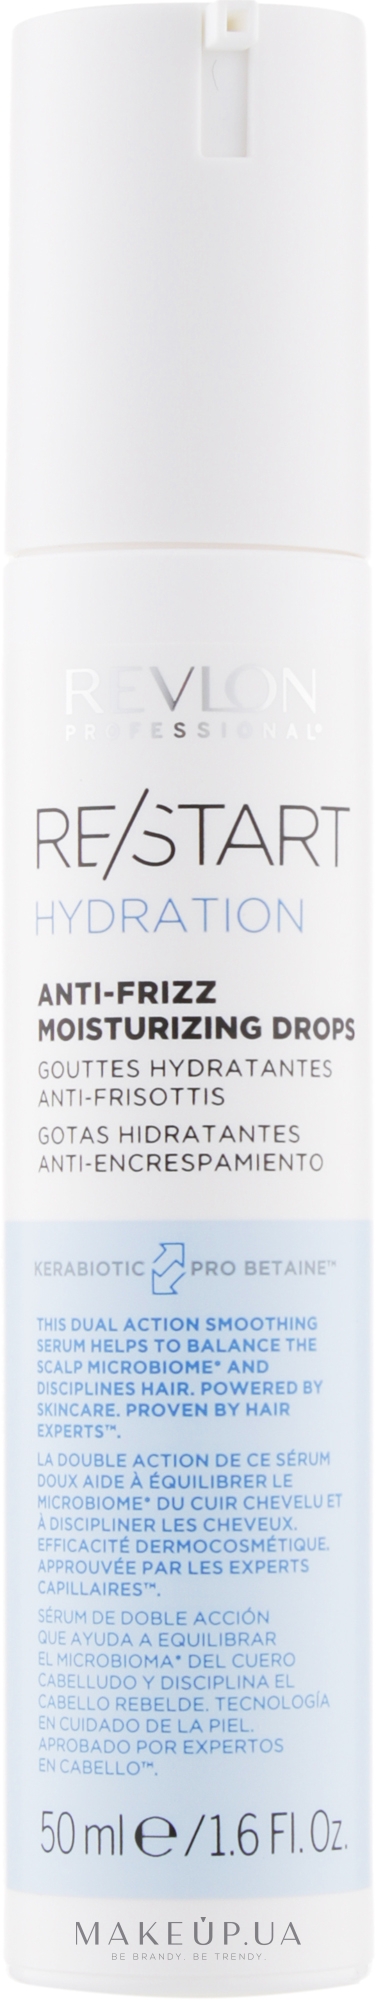 Сироватка для зволоження волосся - Revlon Professional Restart Hydration  Anti-frizz Moisturizing Drops: купити за найкращою ціною в Україні